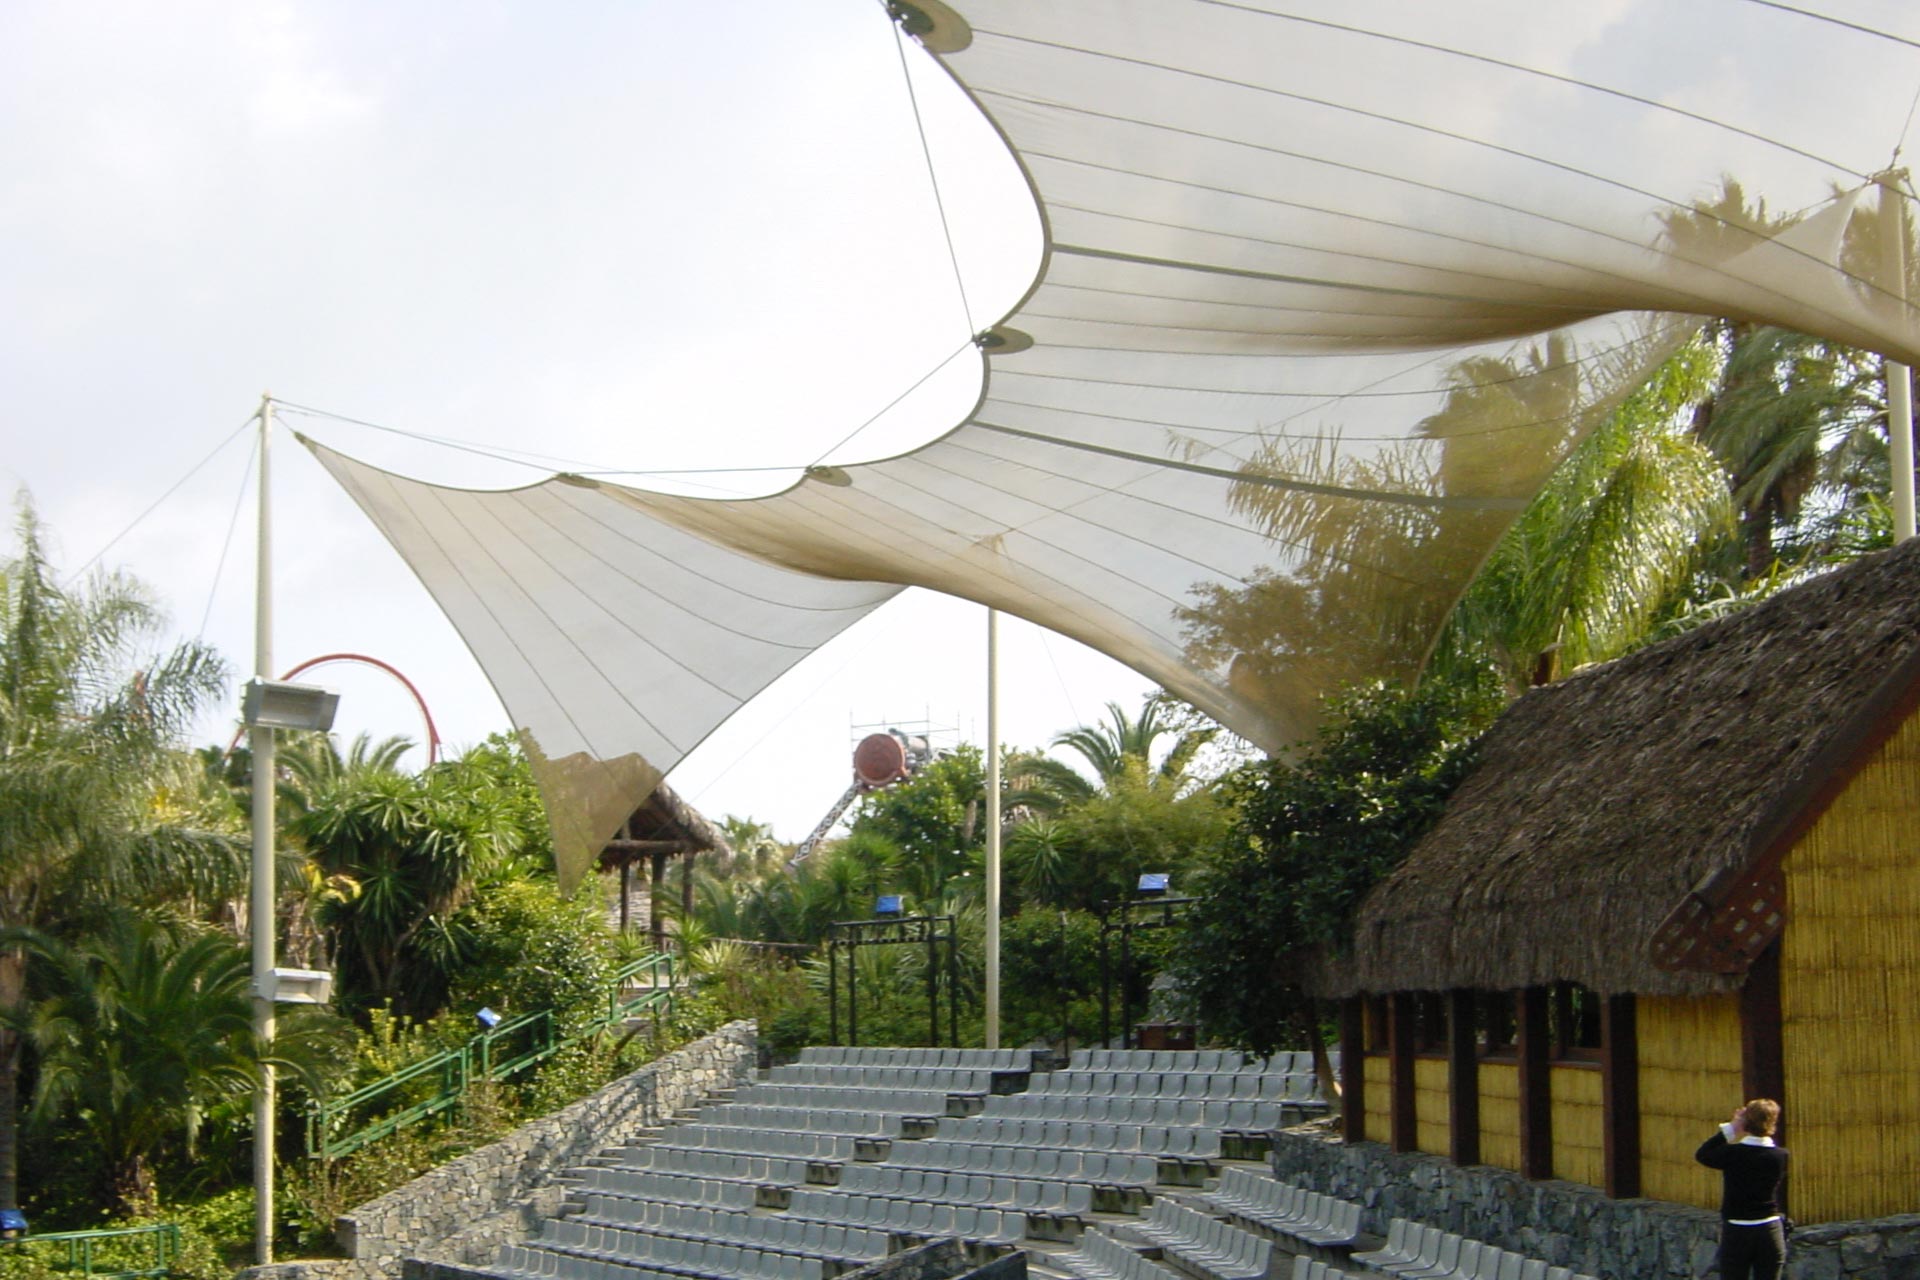 Estructura tensada cubriendo las graderías de un escenario al aire libre en parque temático Port Av